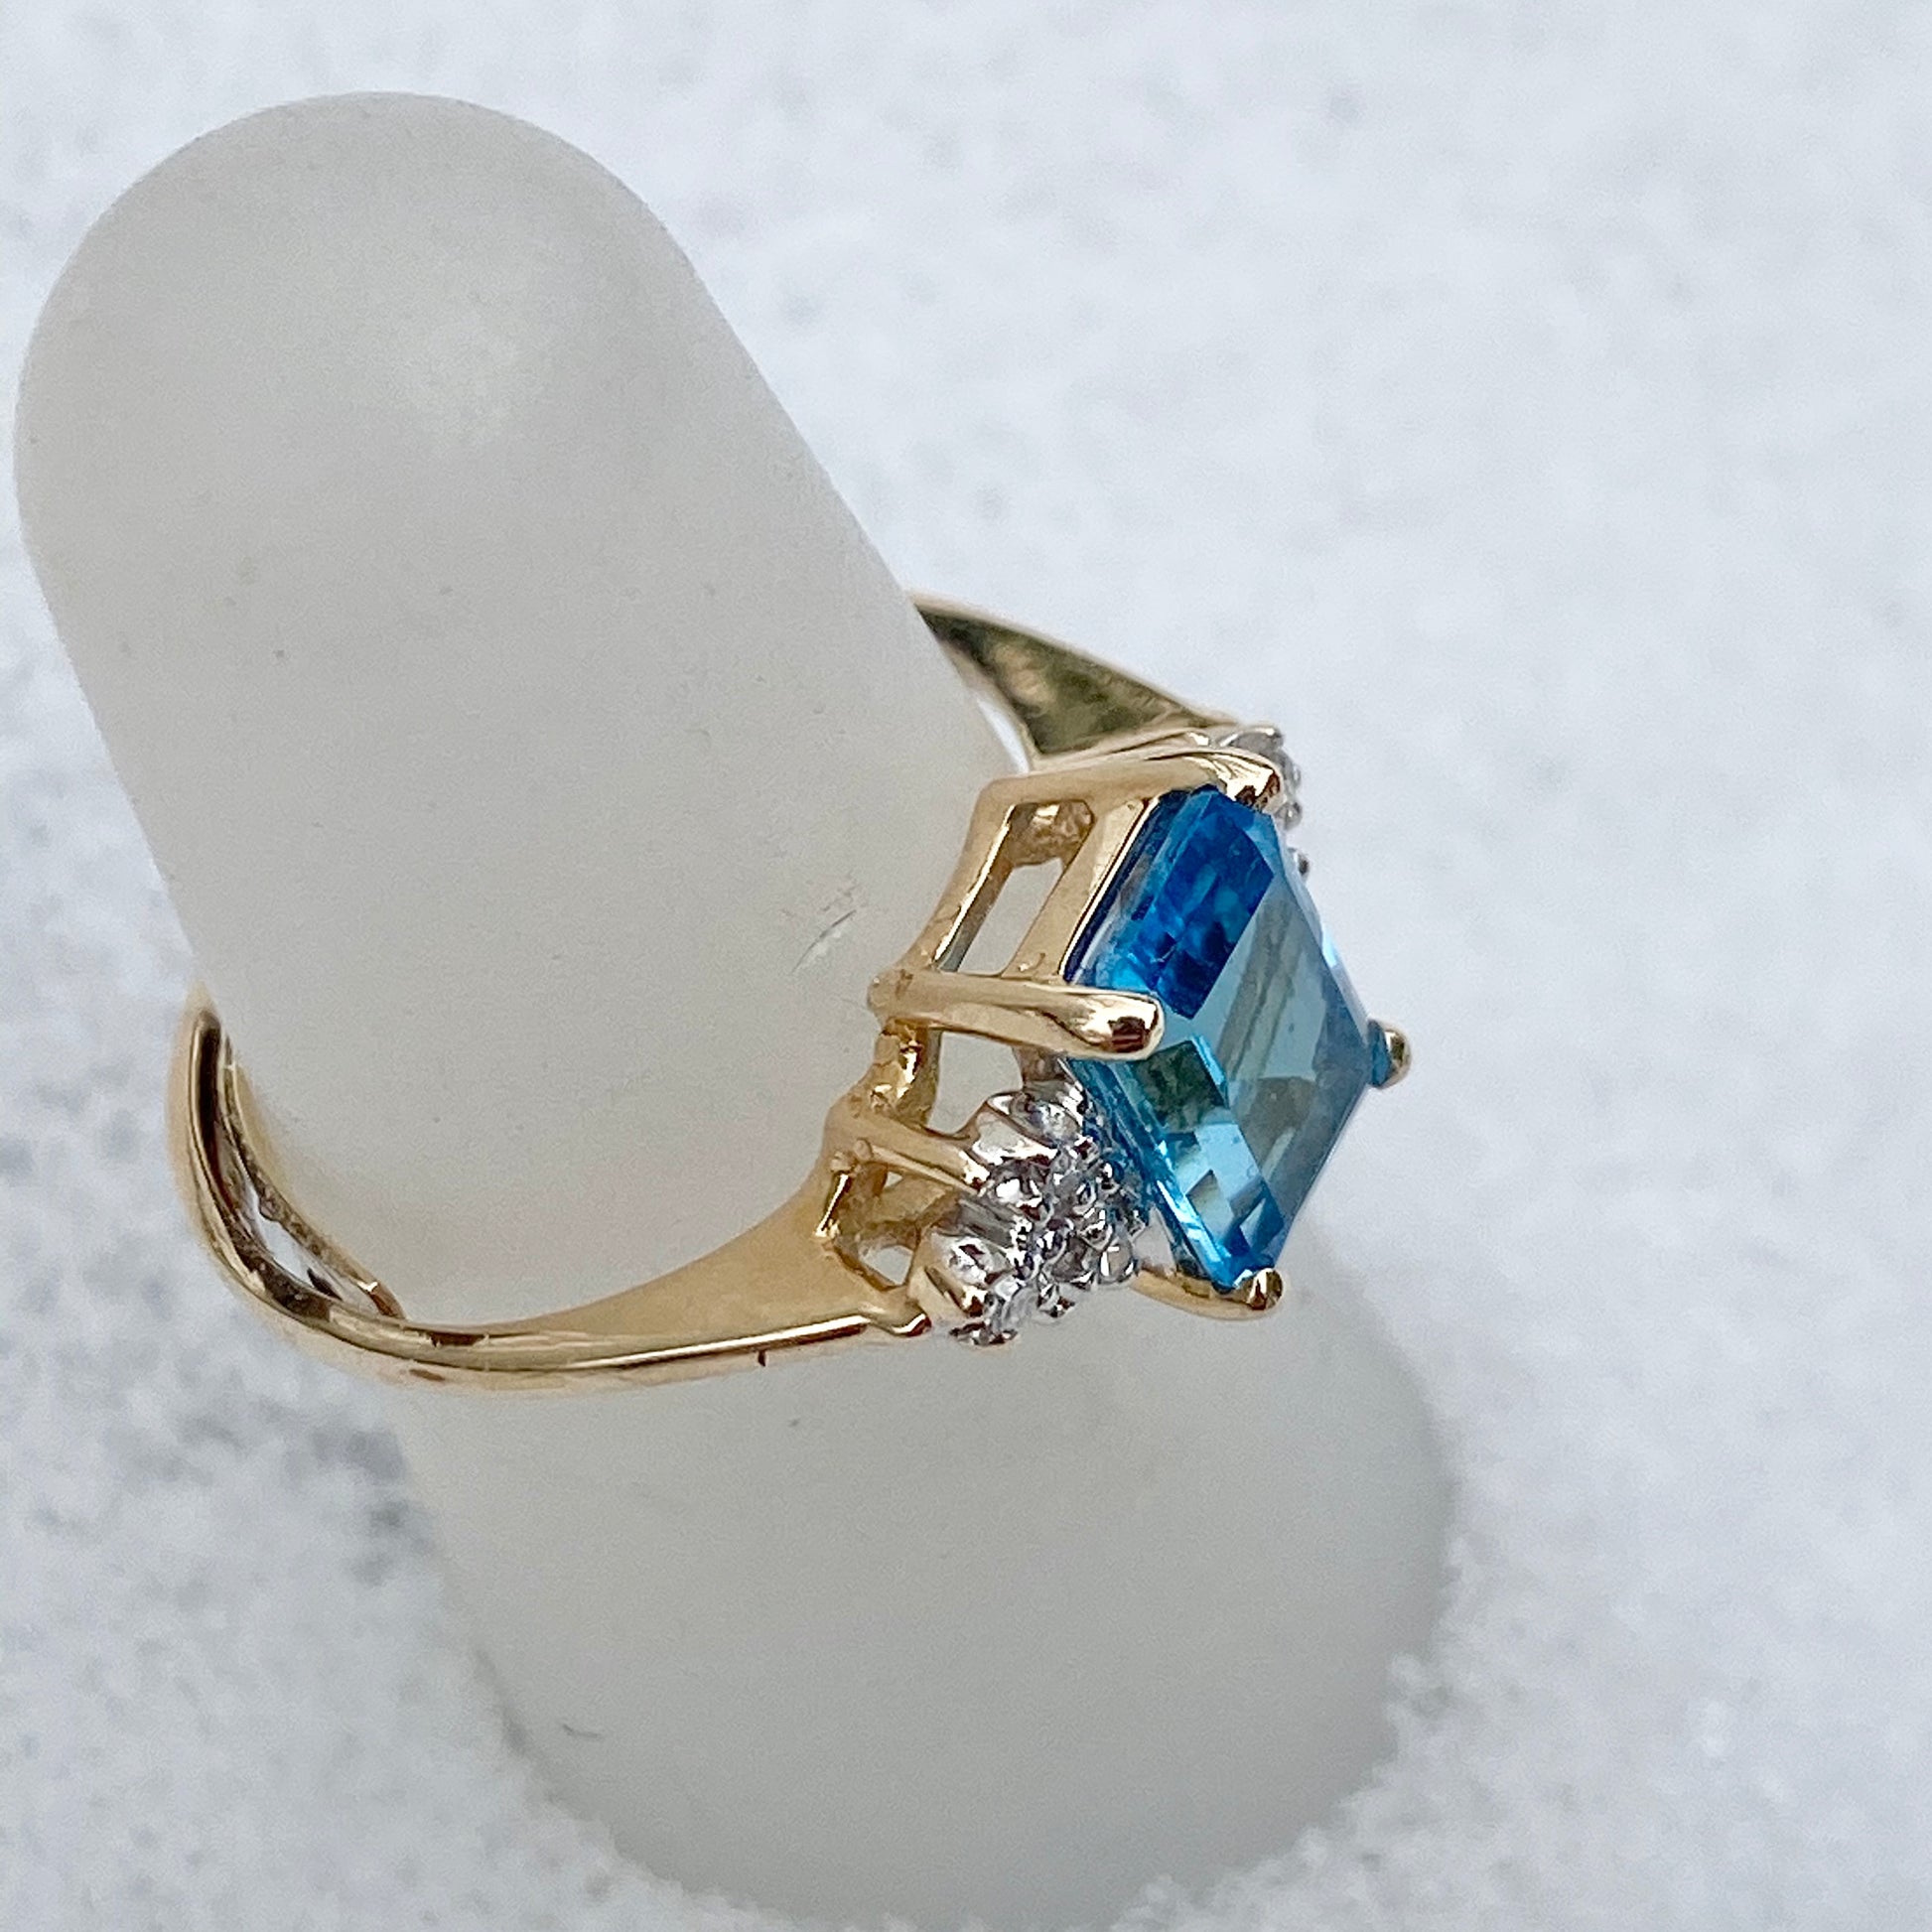 Estate 10KT Yellow Gold Emerald-Cut Blue Topaz + Diamond Ring, Estate 10KT Yellow Gold Emerald-Cut Blue Topaz + Diamond Ring - Legacy Saint Jewelry